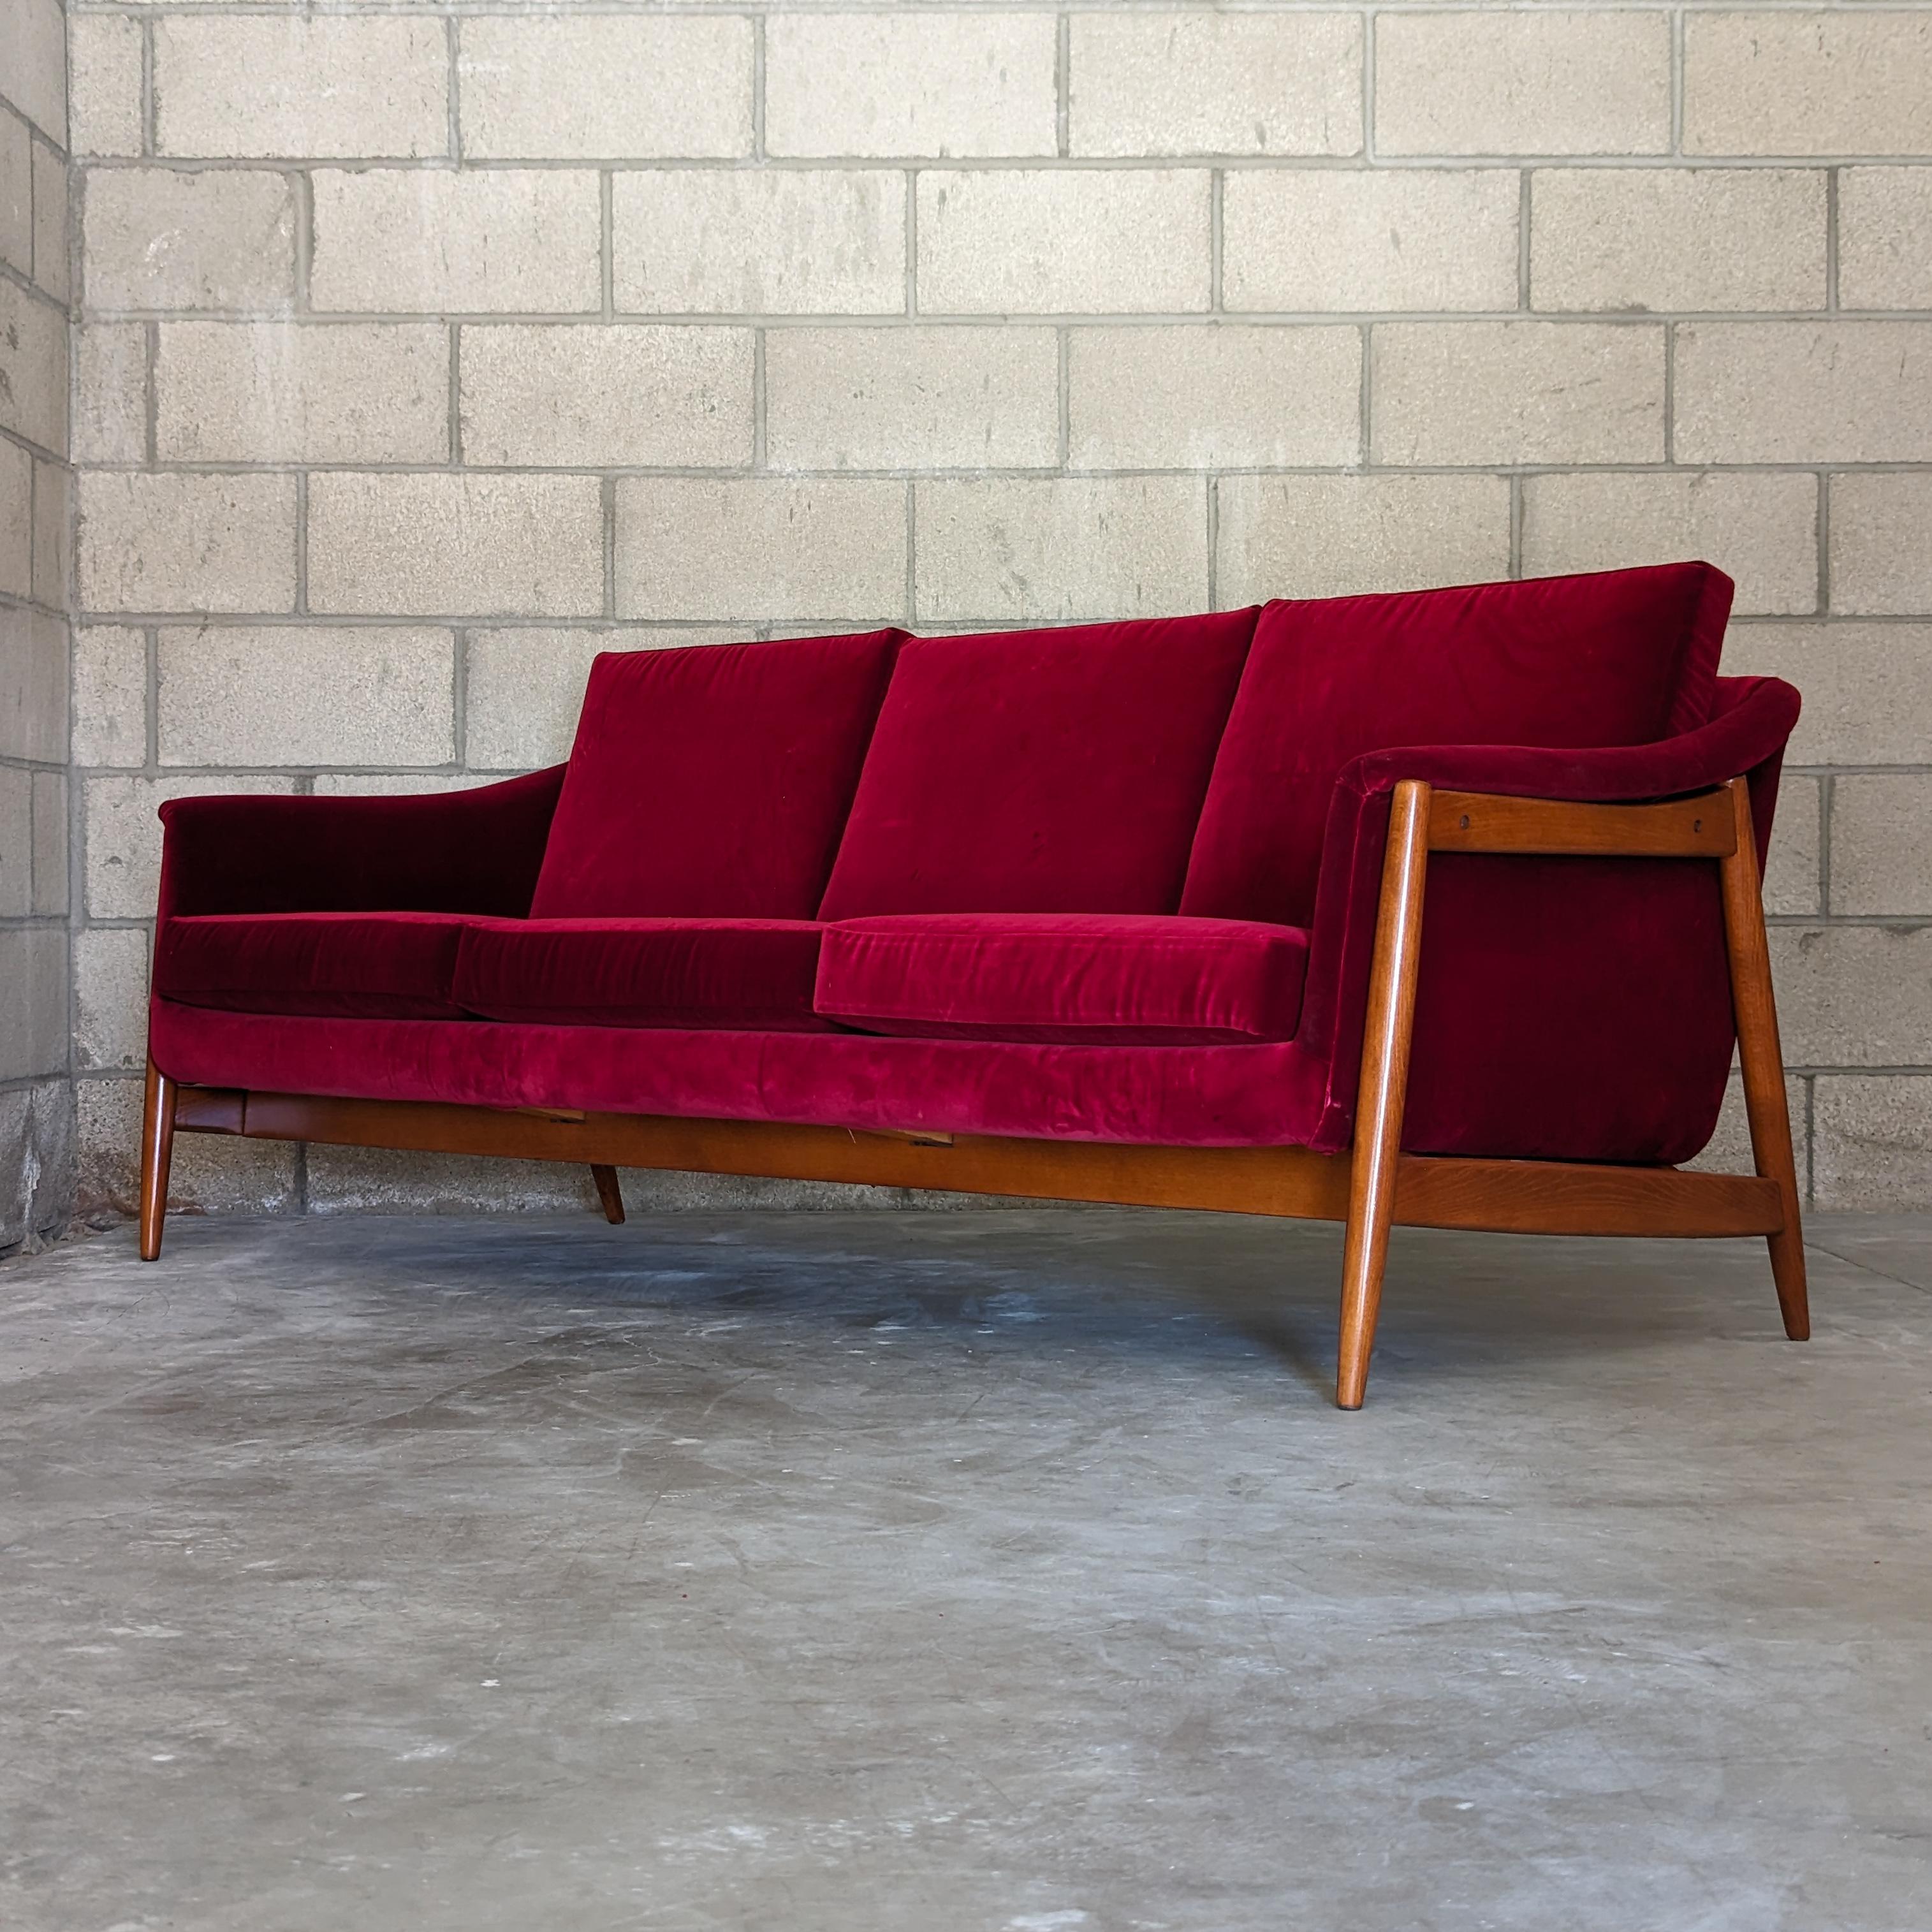 Beech Mid Century Modern Sofa Designed by Folke Ohlsson for Dux of Sweden, c1960s